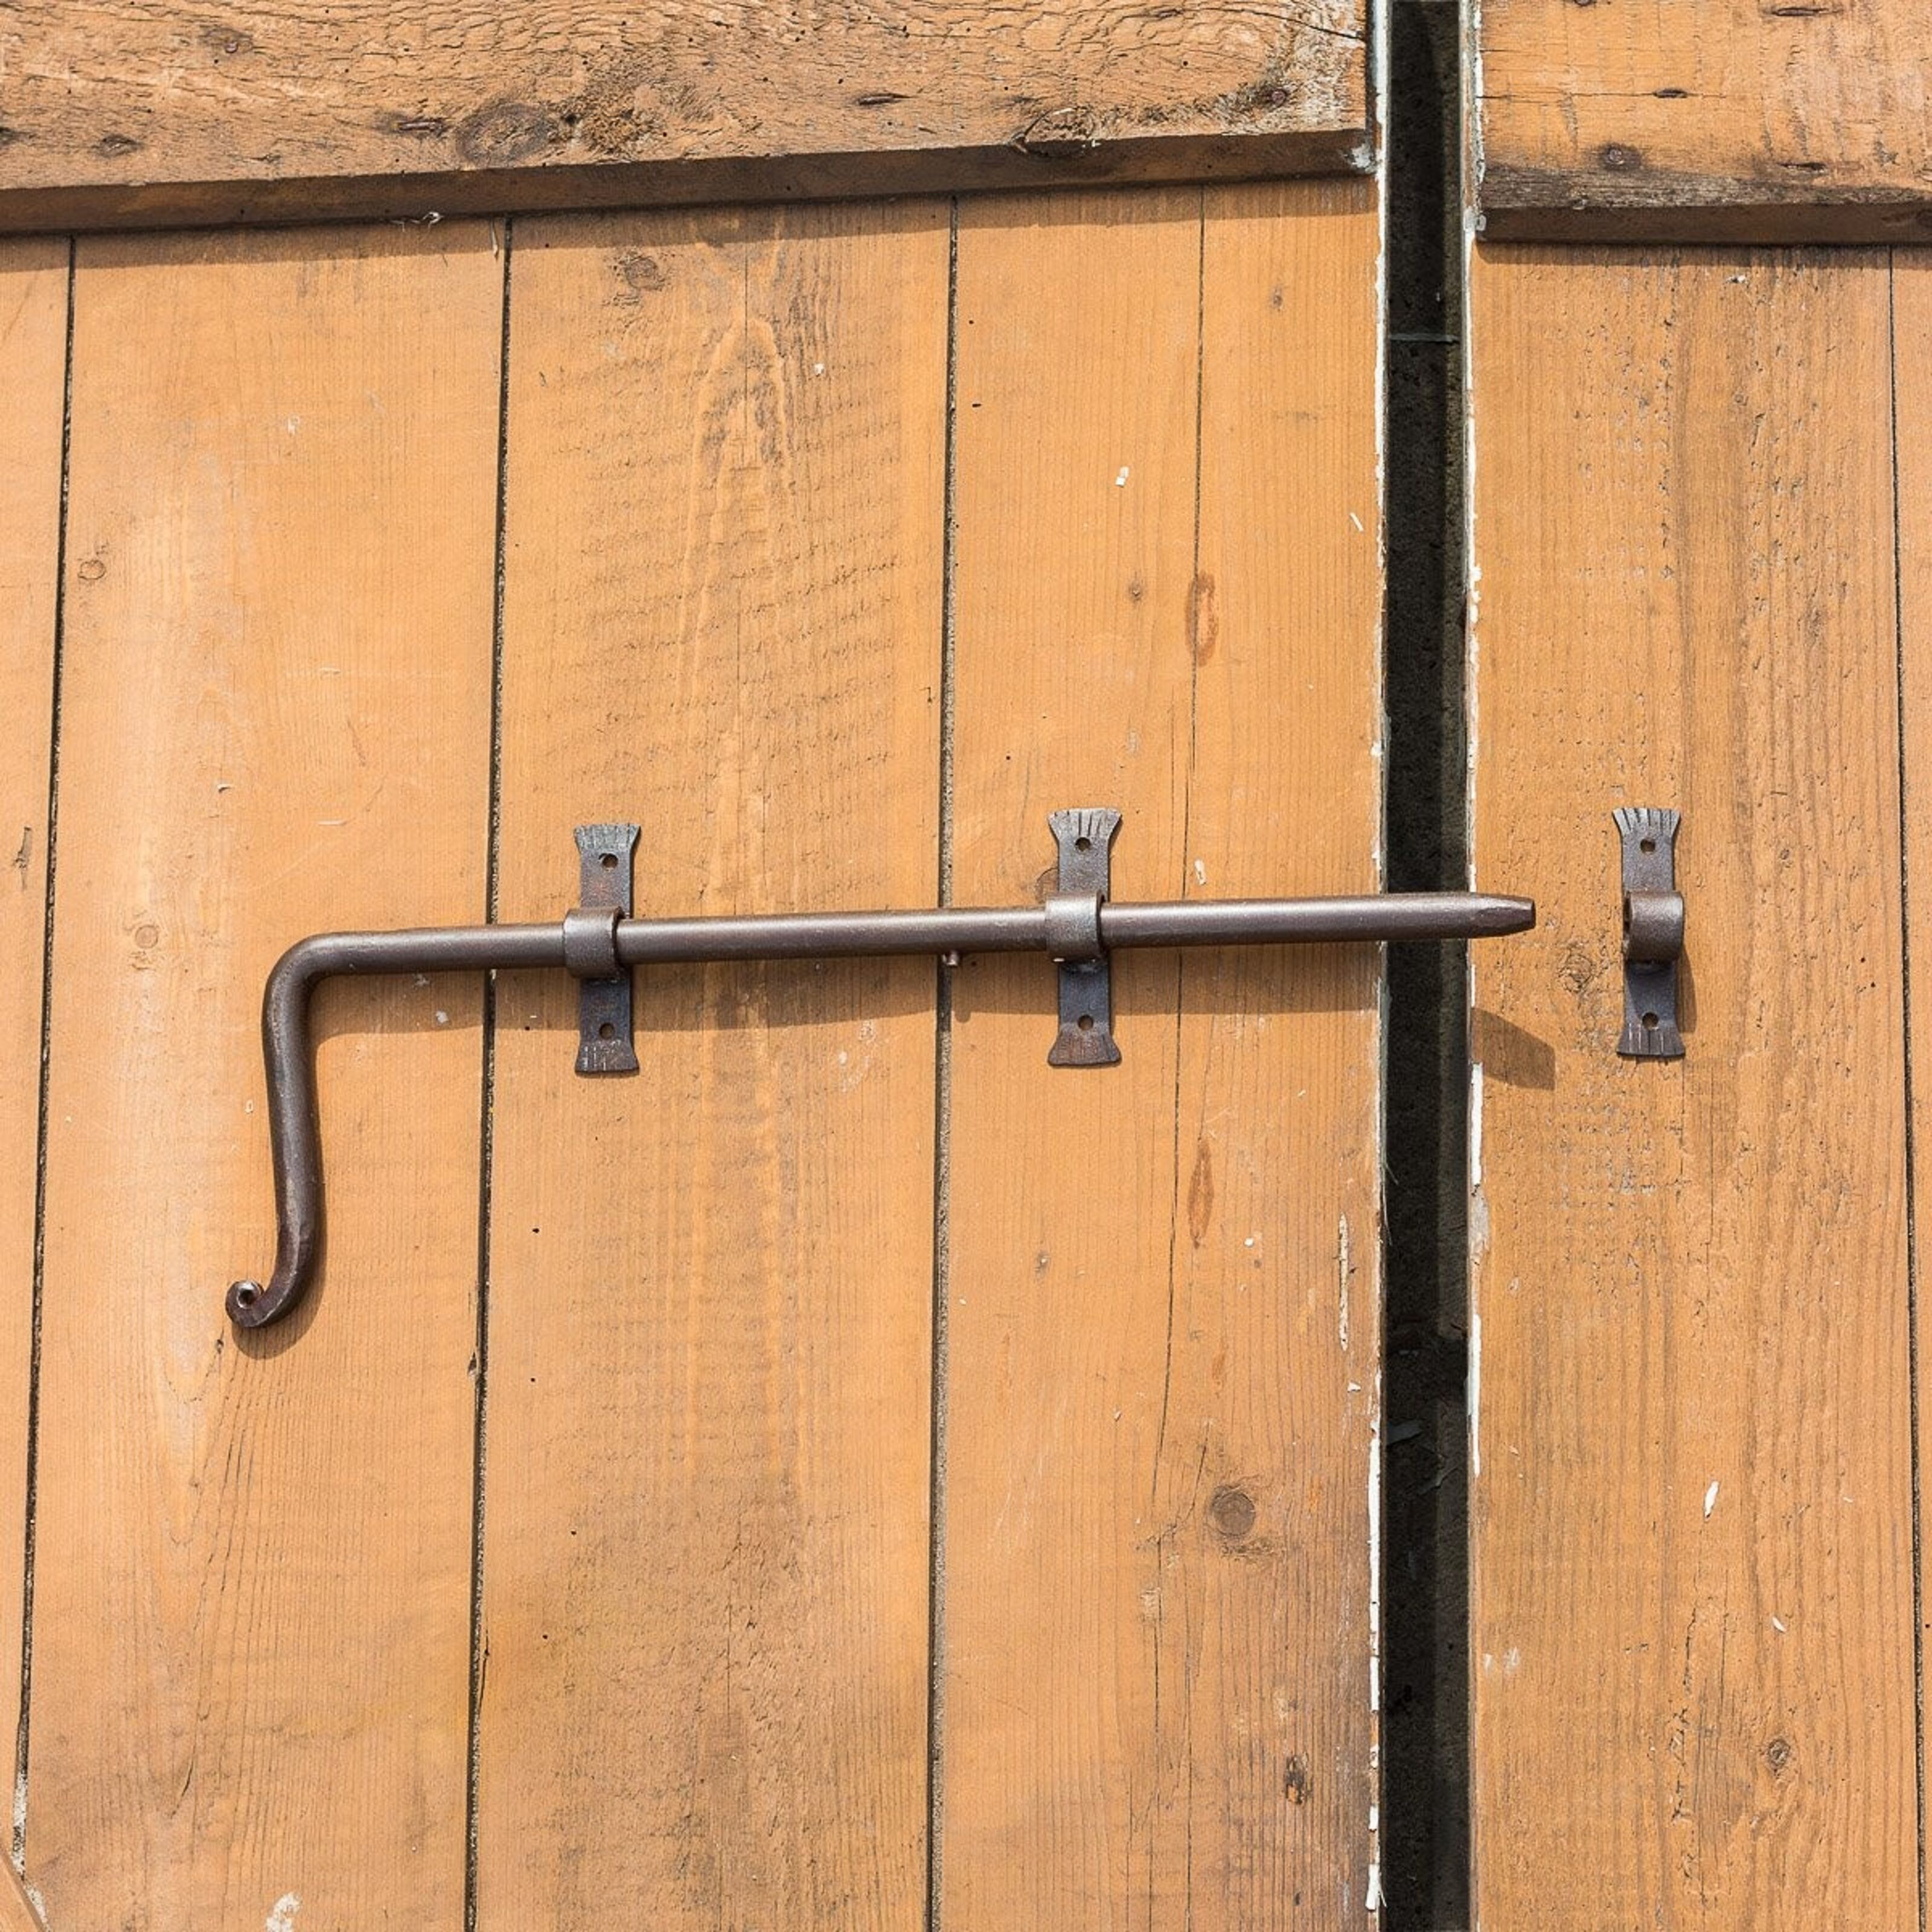 Buy wholesale Sliding bolt, bolt for garden gate - barn door lock